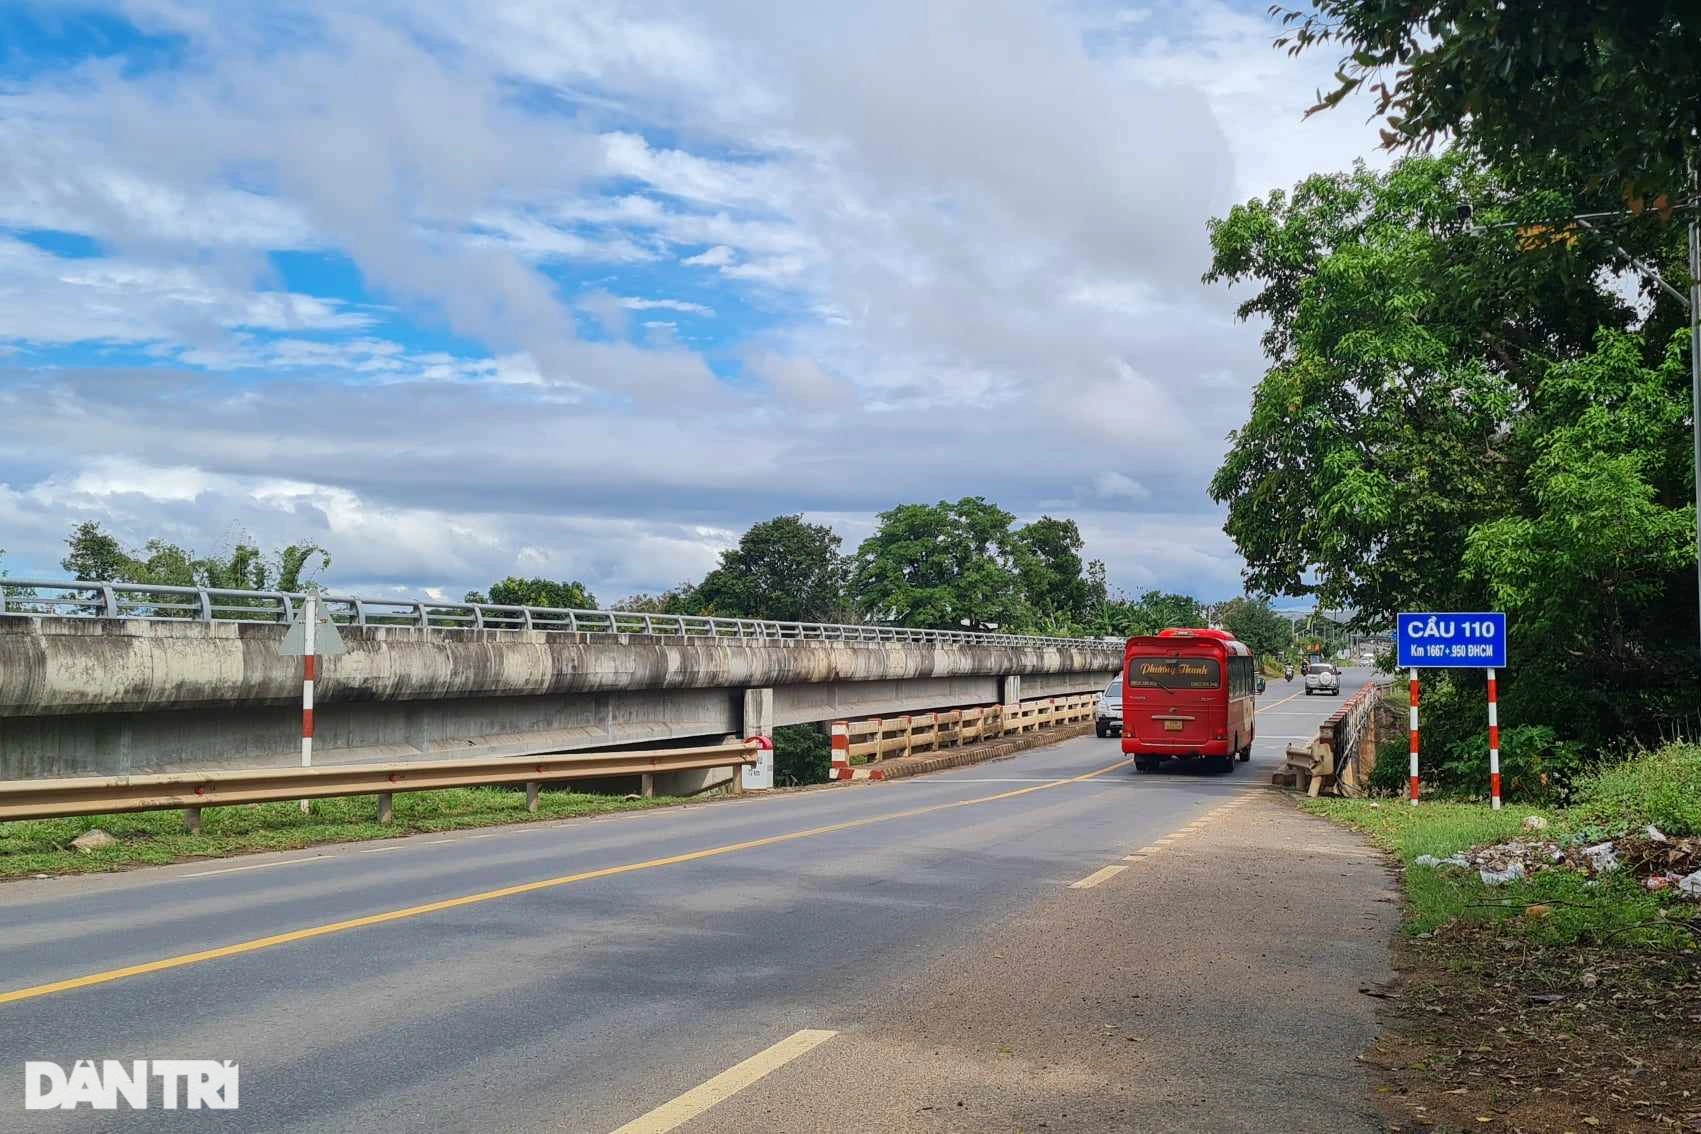 Đề xuất xã hội hóa để hoàn tất cây cầu dang dở nối Đắk Lắk - Gia Lai - 2